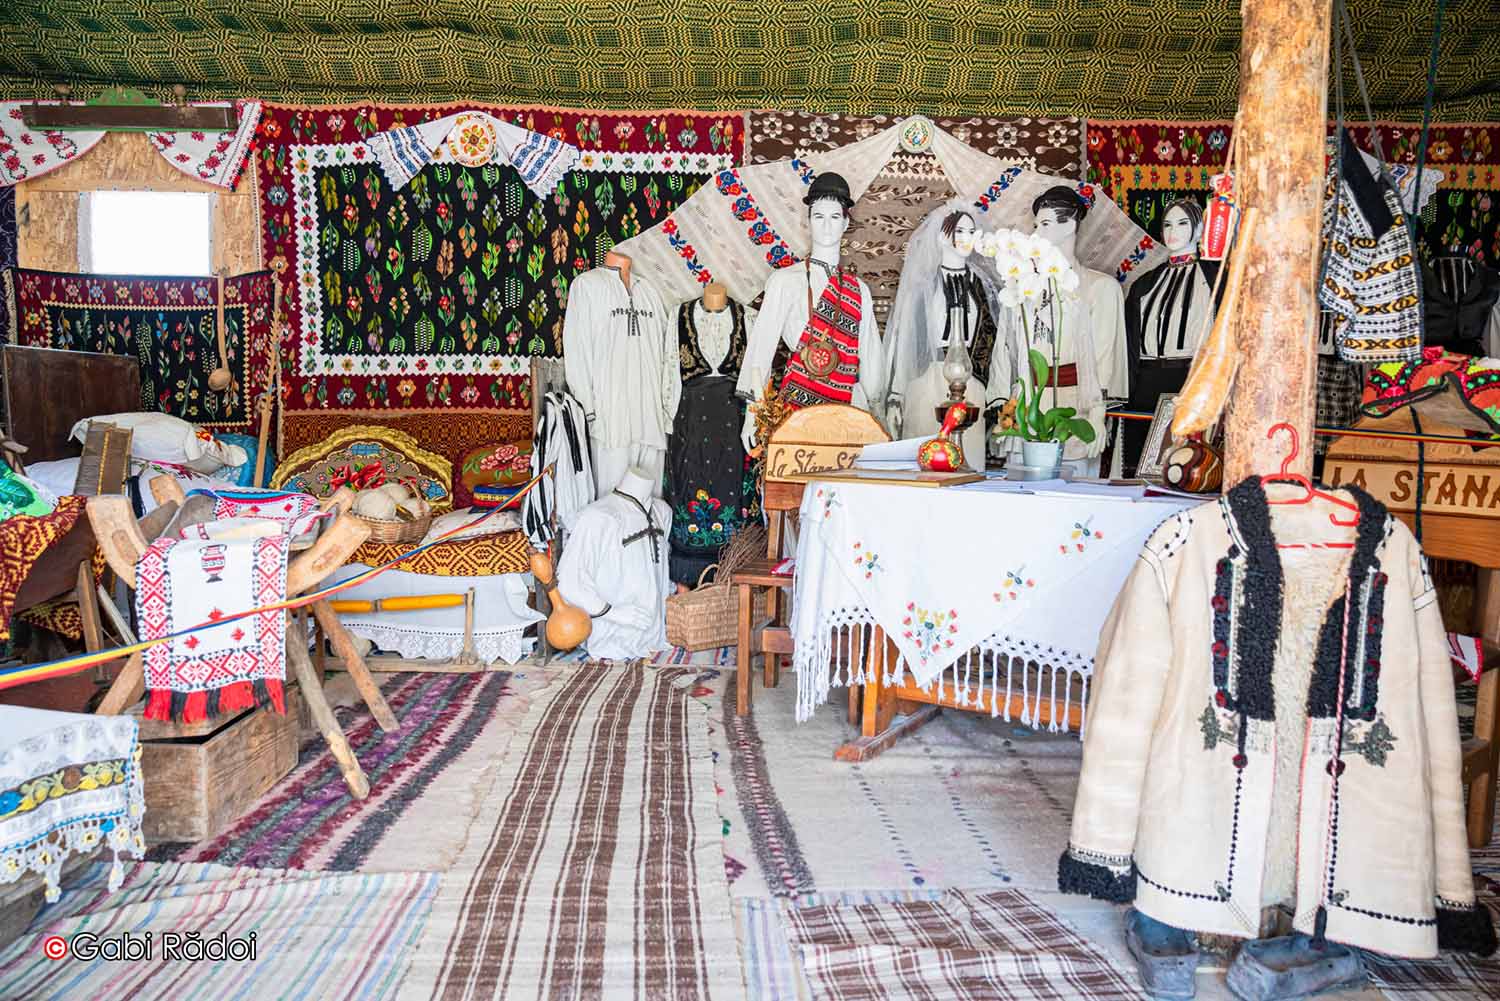 Port tradițional românesc și alte obiecte autohtone în muzeul de la Stana Ștefanu